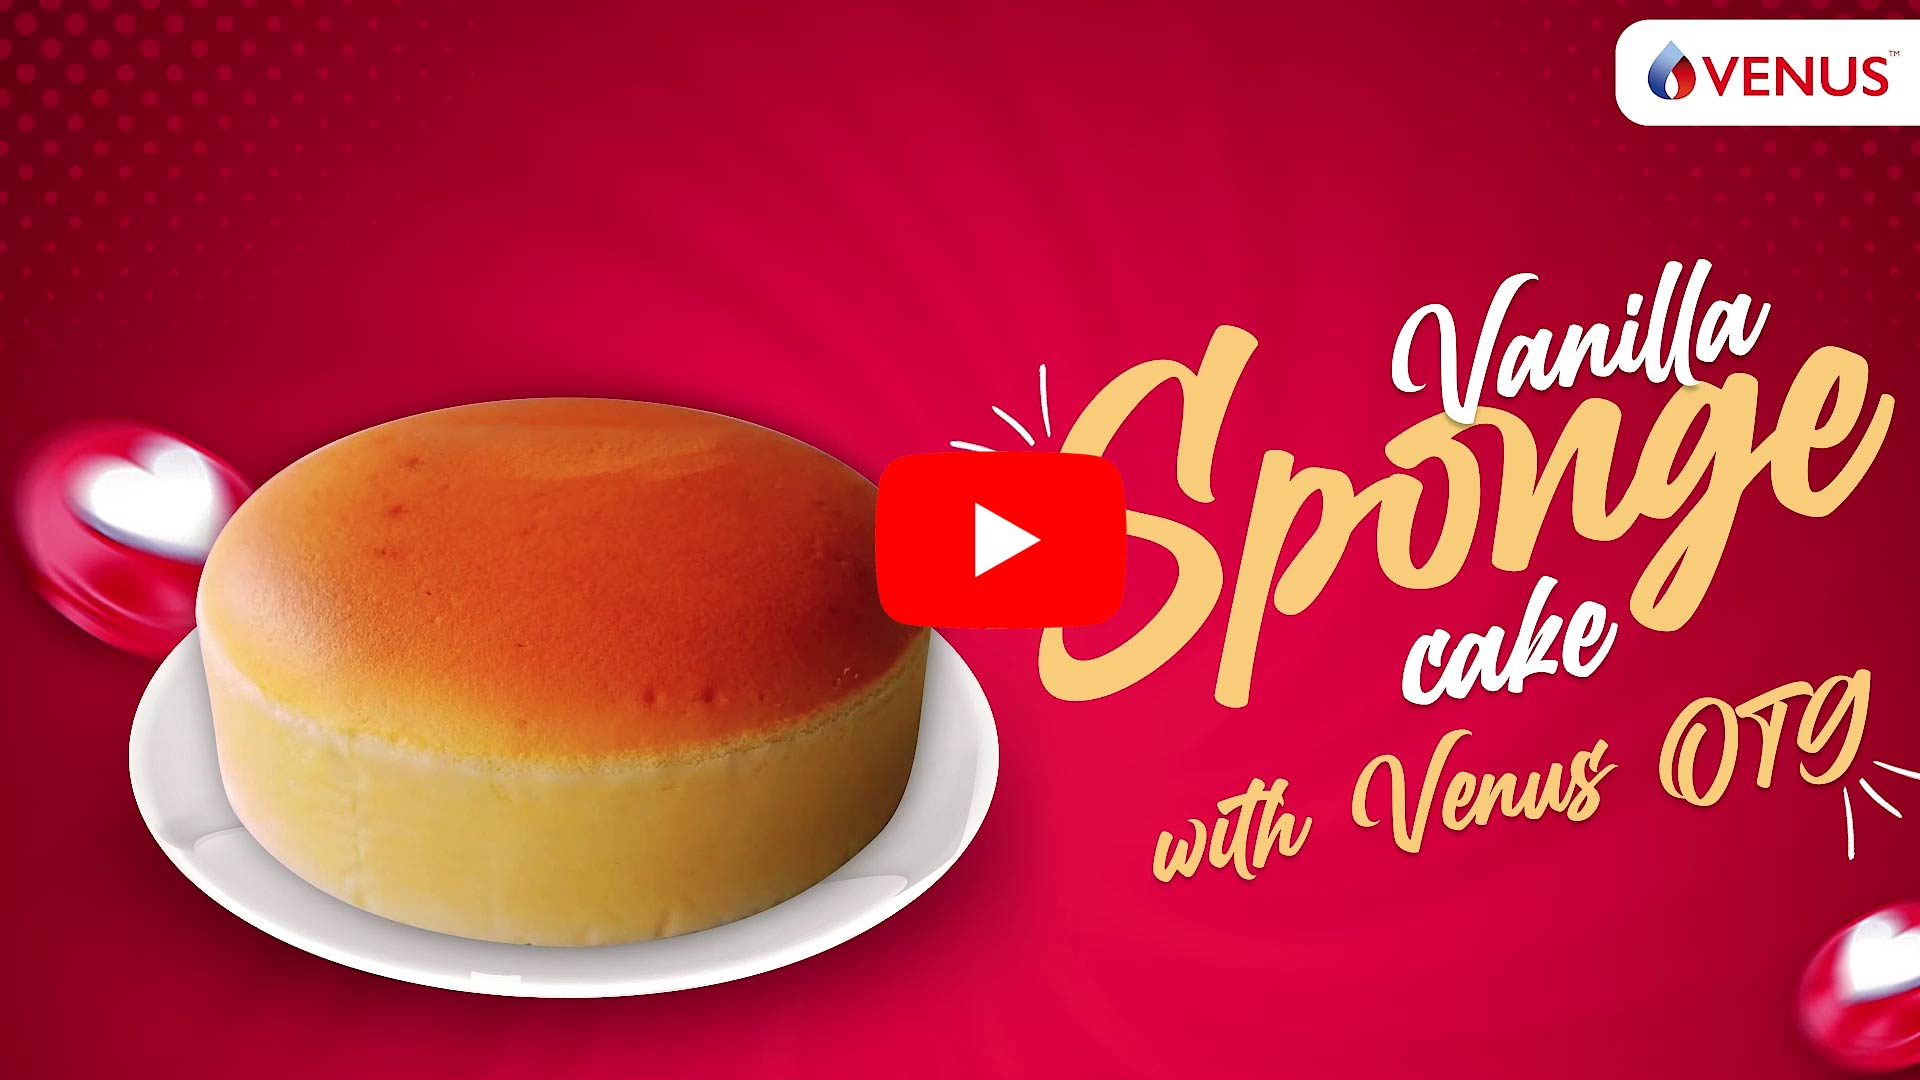 otg-Venilla Sponge cake